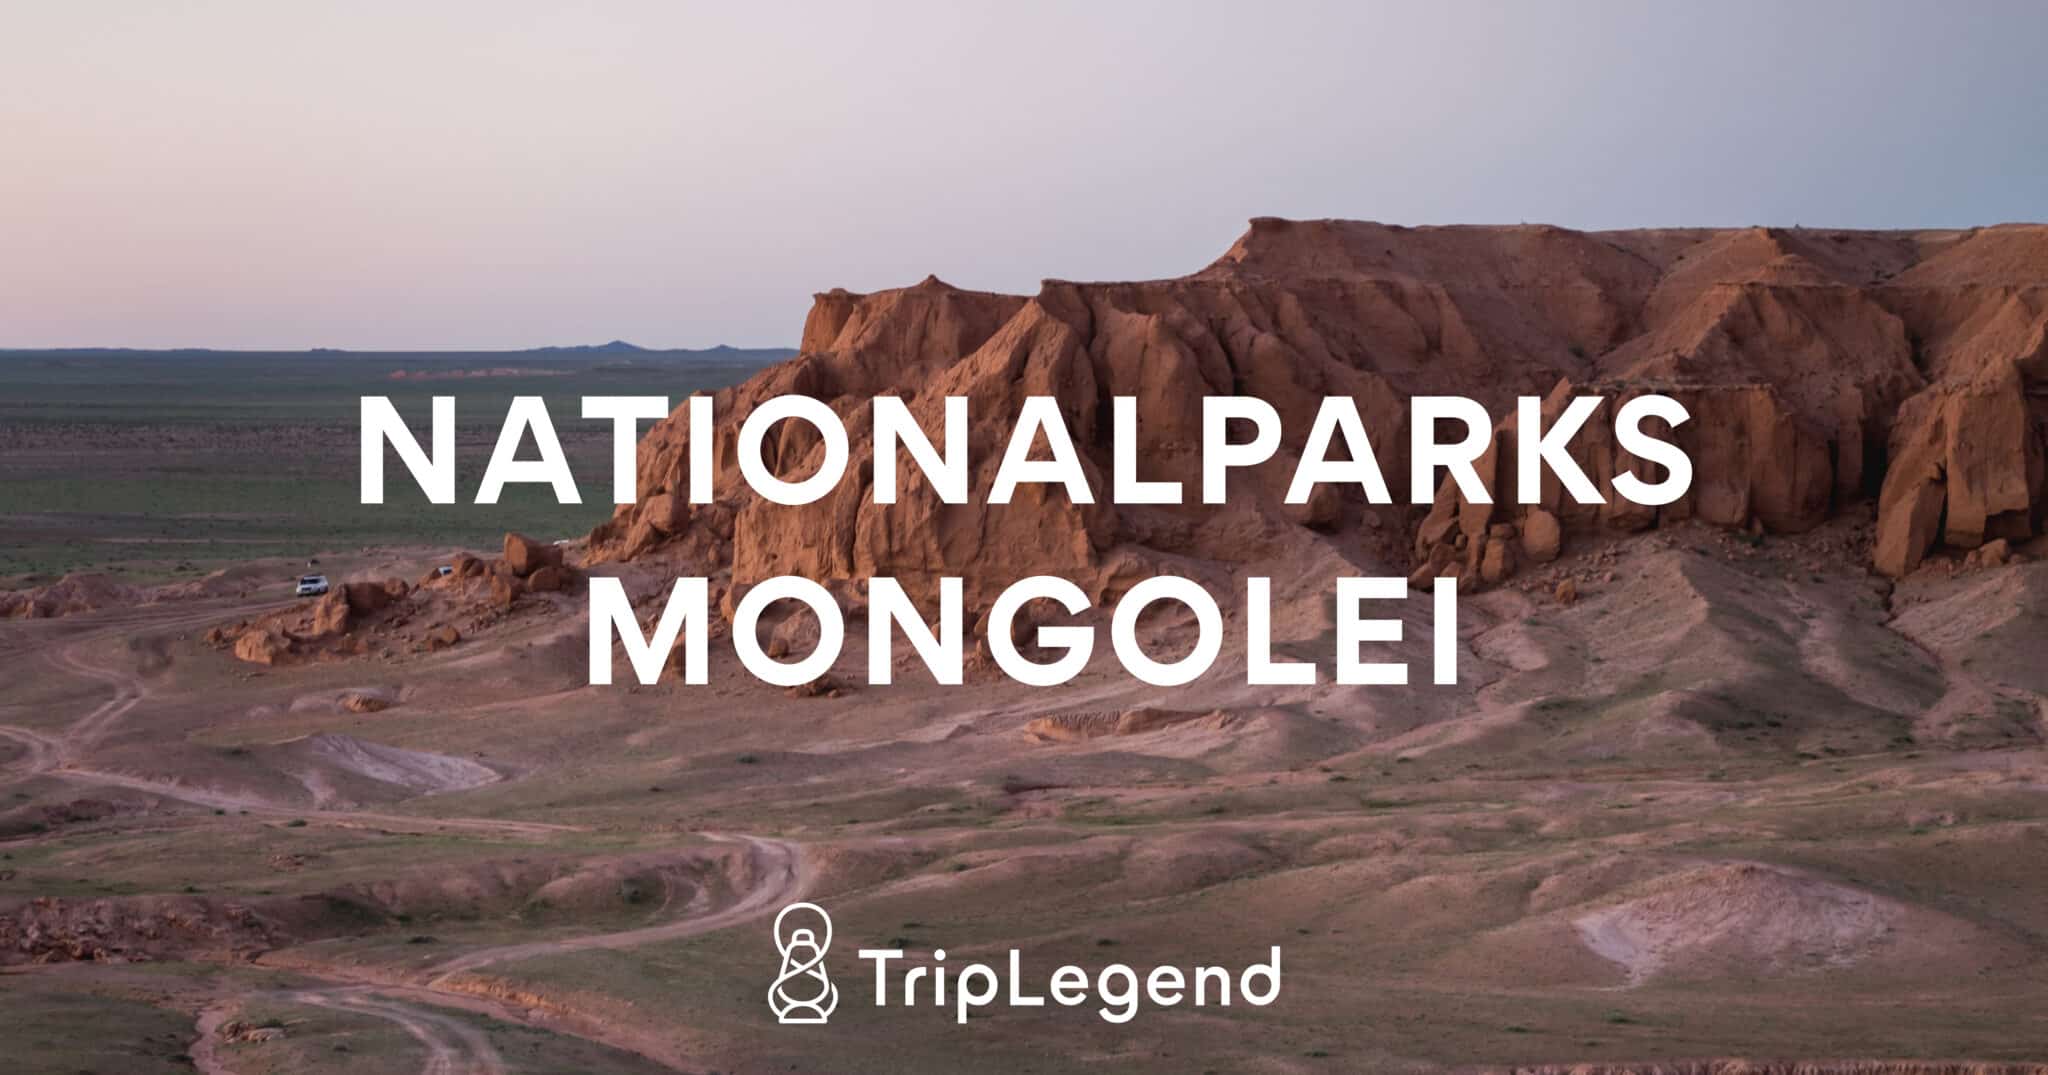 Immagine di copertina per l'articolo sui parchi nazionali della Mongolia